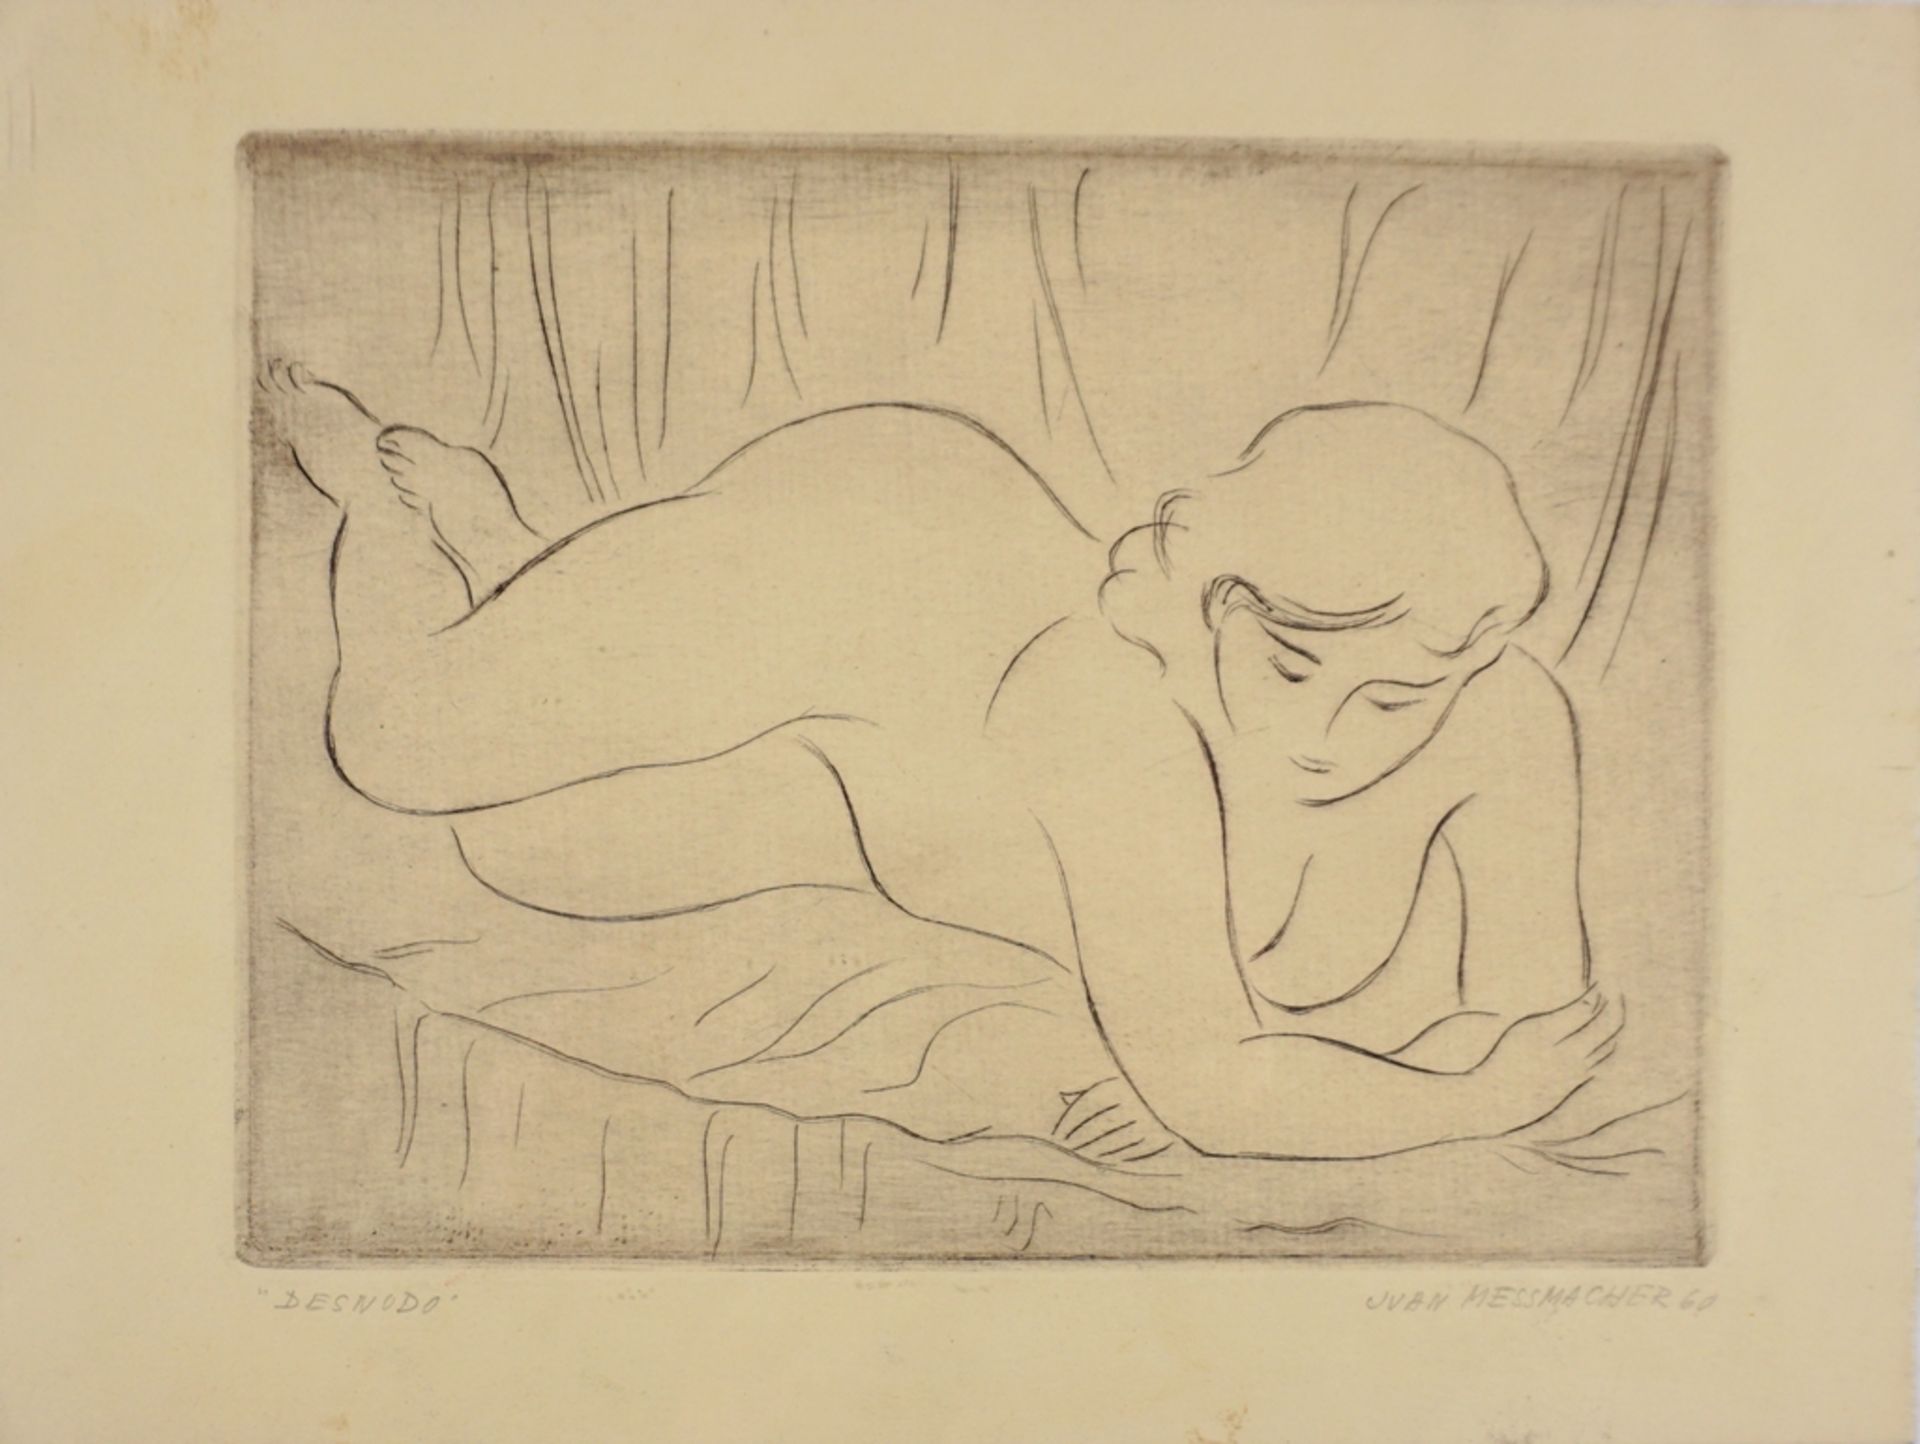 Juan Messmacher (1902, Dresden - ?), 3 Frauenakte "Desnudo" und Selbstporträt, 1960-63, Kaltnadelra - Bild 2 aus 2